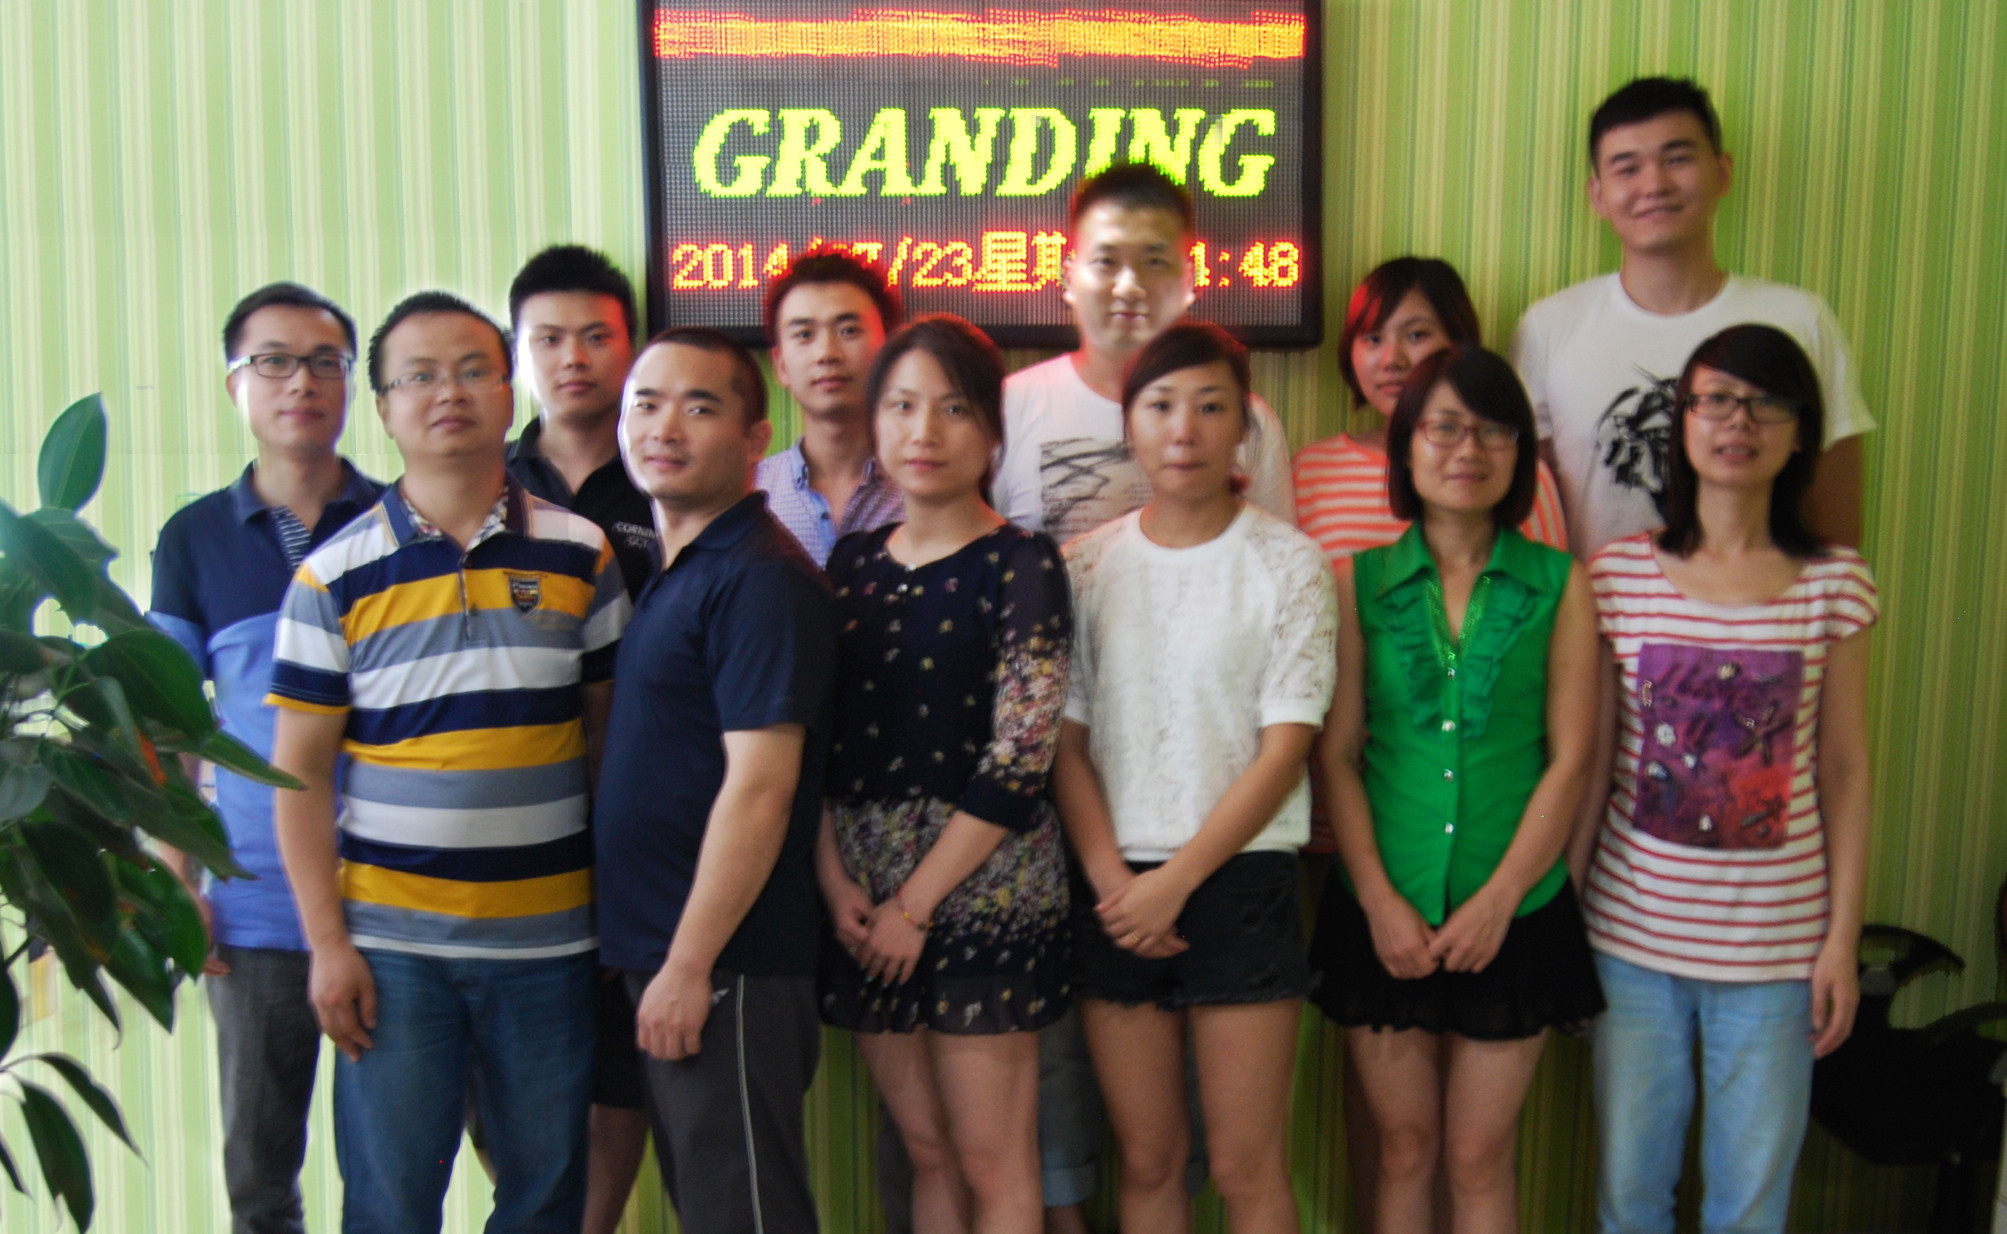 Granding Technology Co., Ltd.